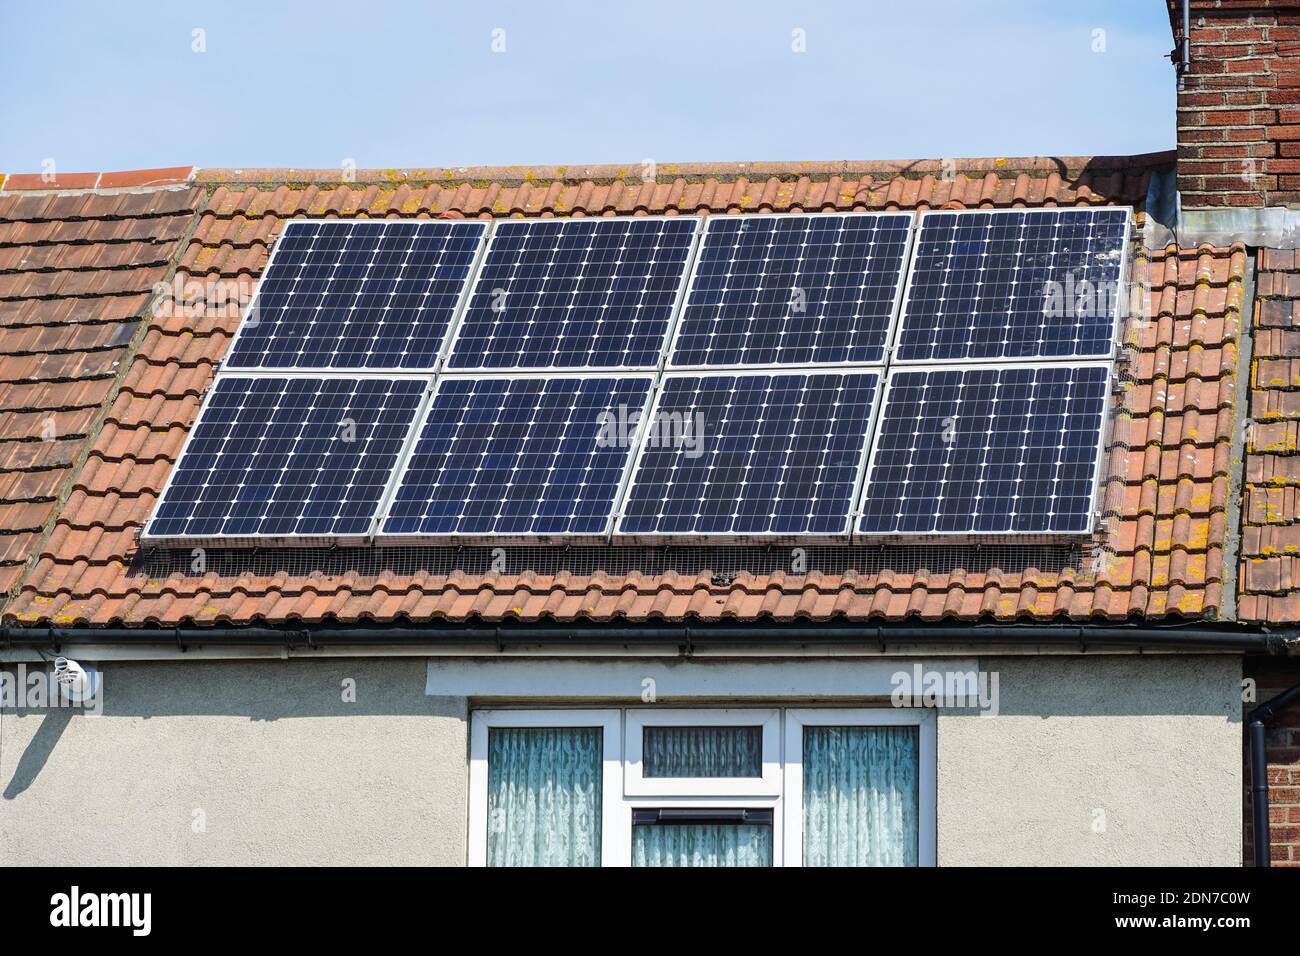 Panneaux solaires sur le toit d'une maison à Londres, Angleterre, Royaume-Uni, Royaume-Uni Banque D'Images